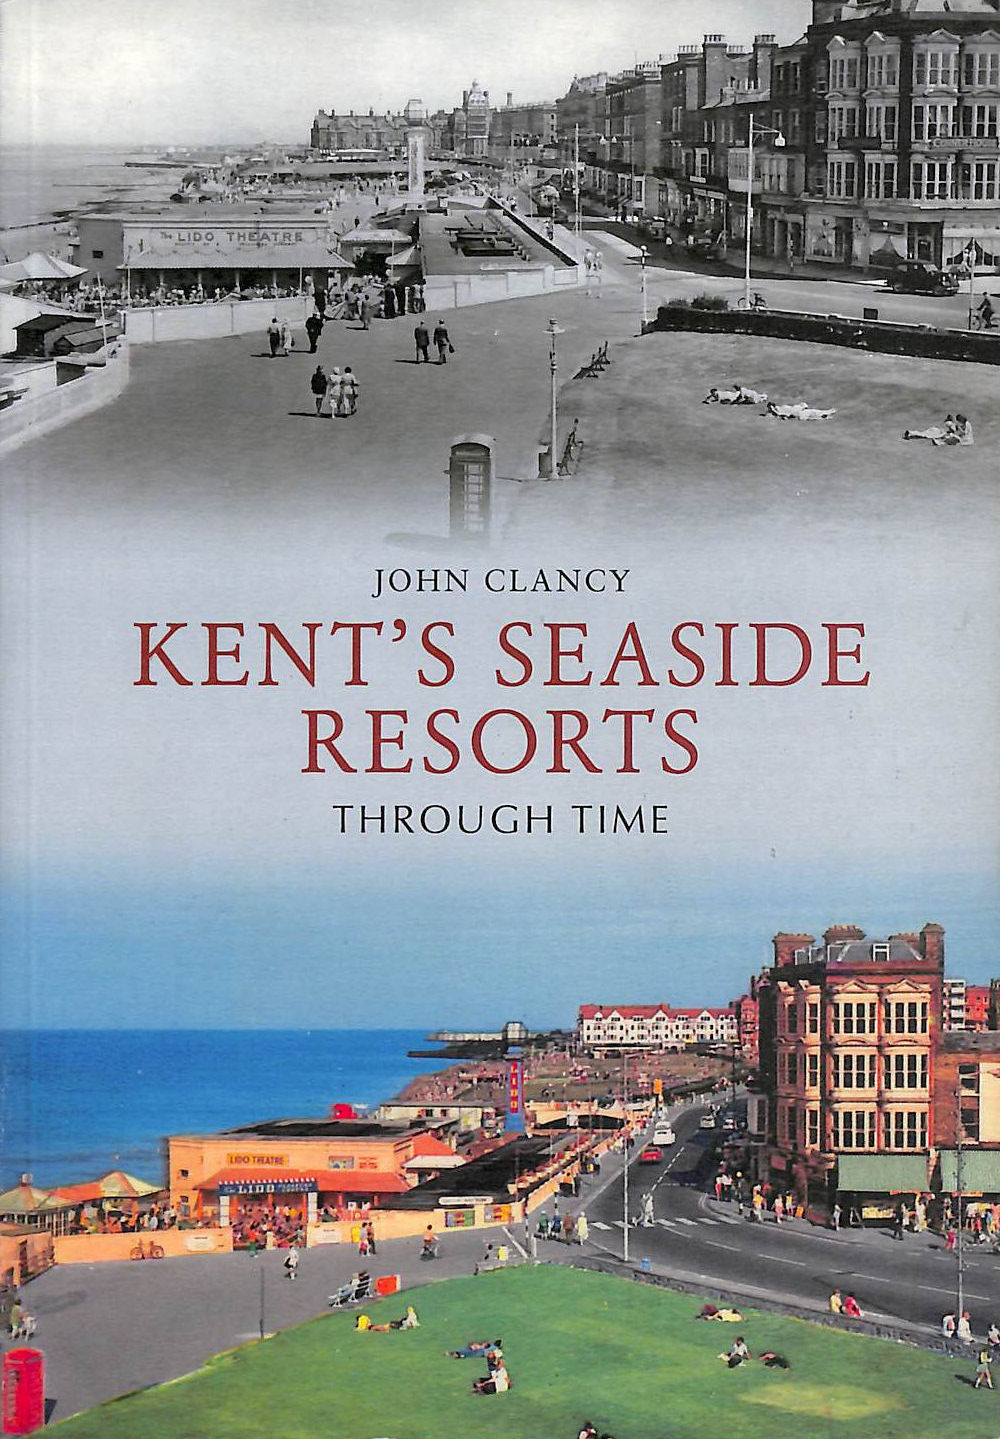 CLANCY, JOHN - Kent's Seaside Resorts Through Time